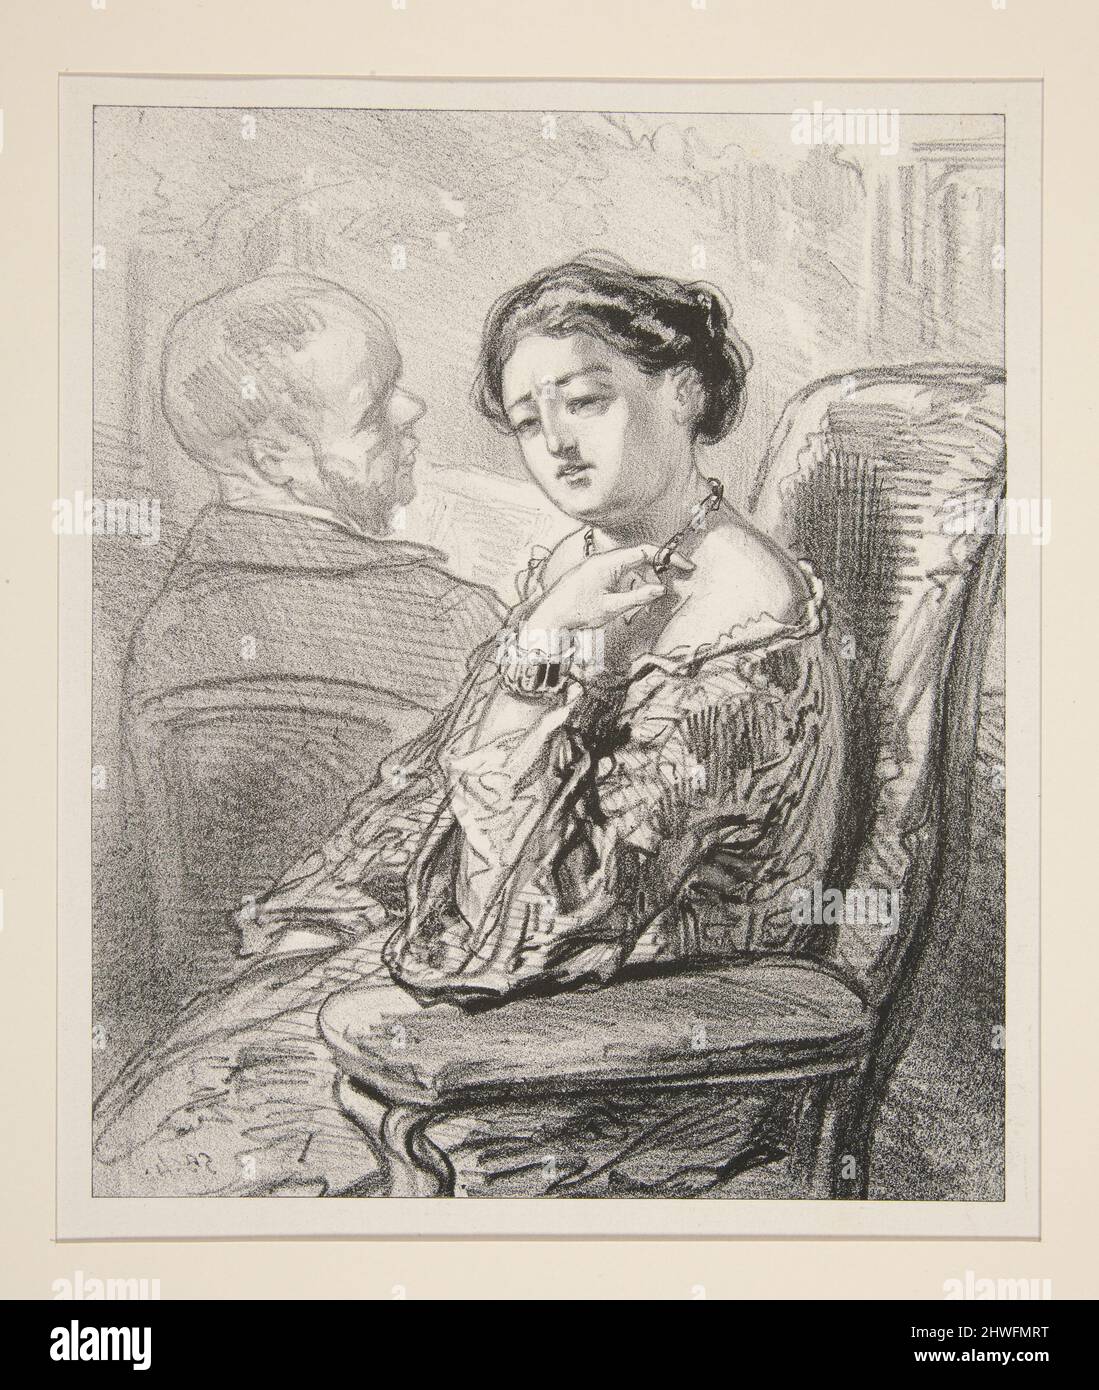 Mon Dieu! Fortune, ne sois donc pas ennuyeux comme ca!….  Artist: Paul Gavarni, French, 1804–1866 Stock Photo